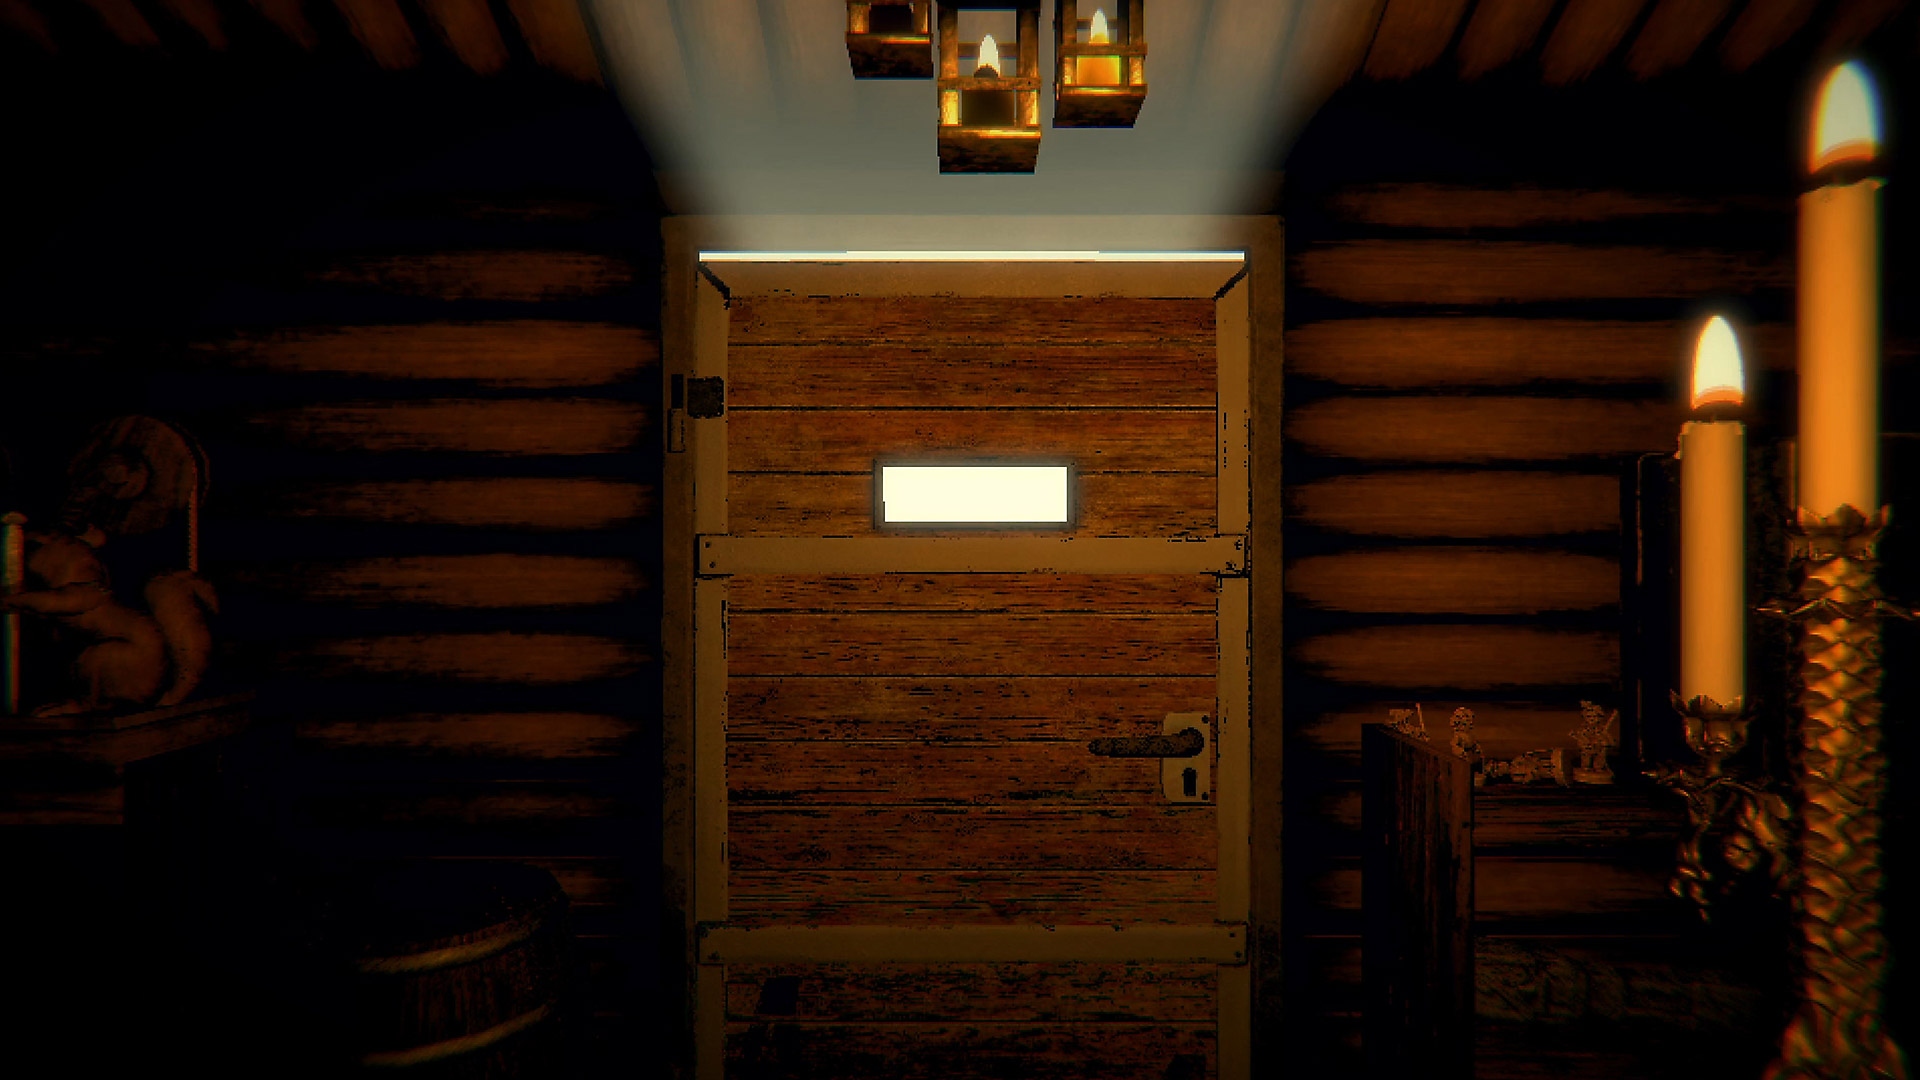 Istantanea della schermata di gioco di Inscryption che mostra una porta in legno chiusa lungo un corridoio illuminato da candele.